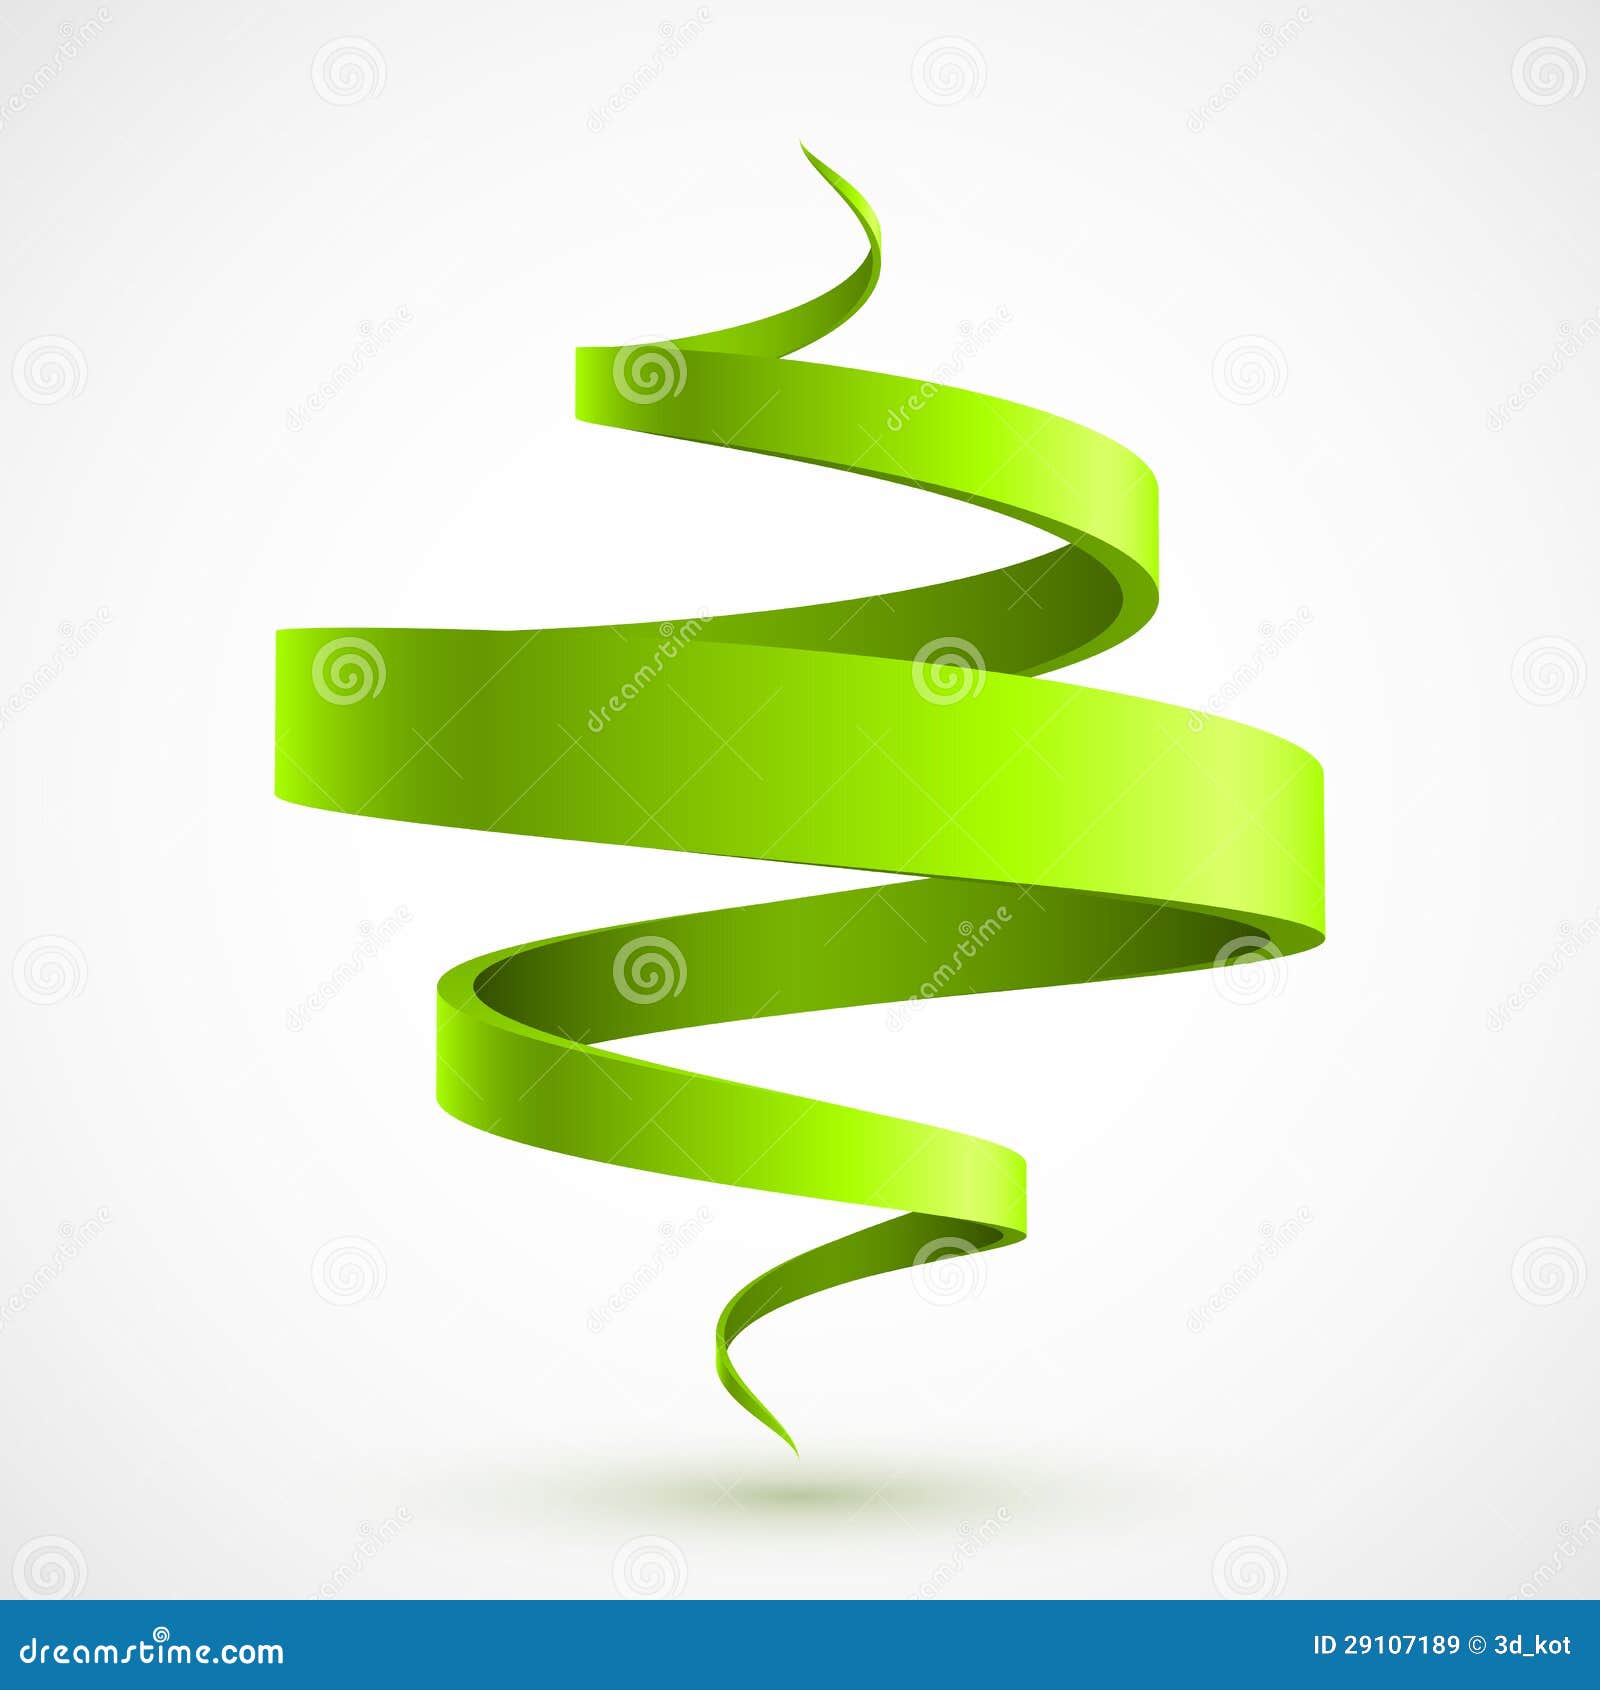 green spiral 3d